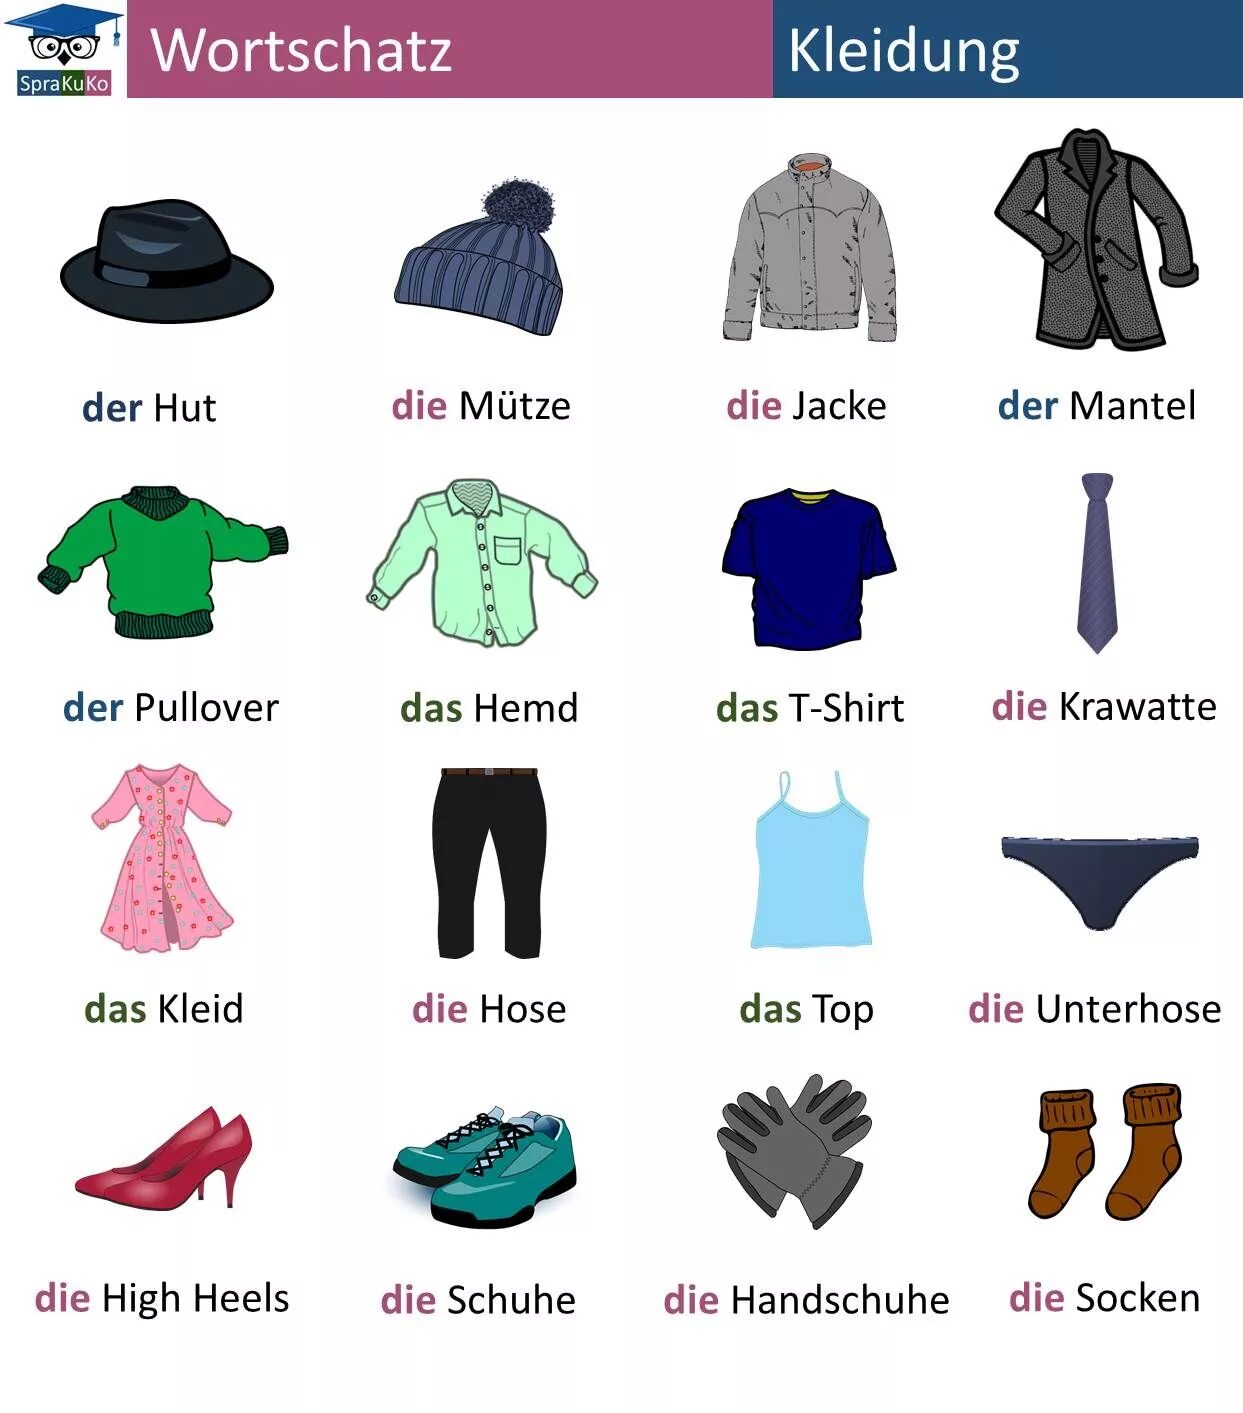 14 слов одежды. Одежда на немецком языке. Название одежды. Одежда на немецком с артиклями. Kleidung одежда.